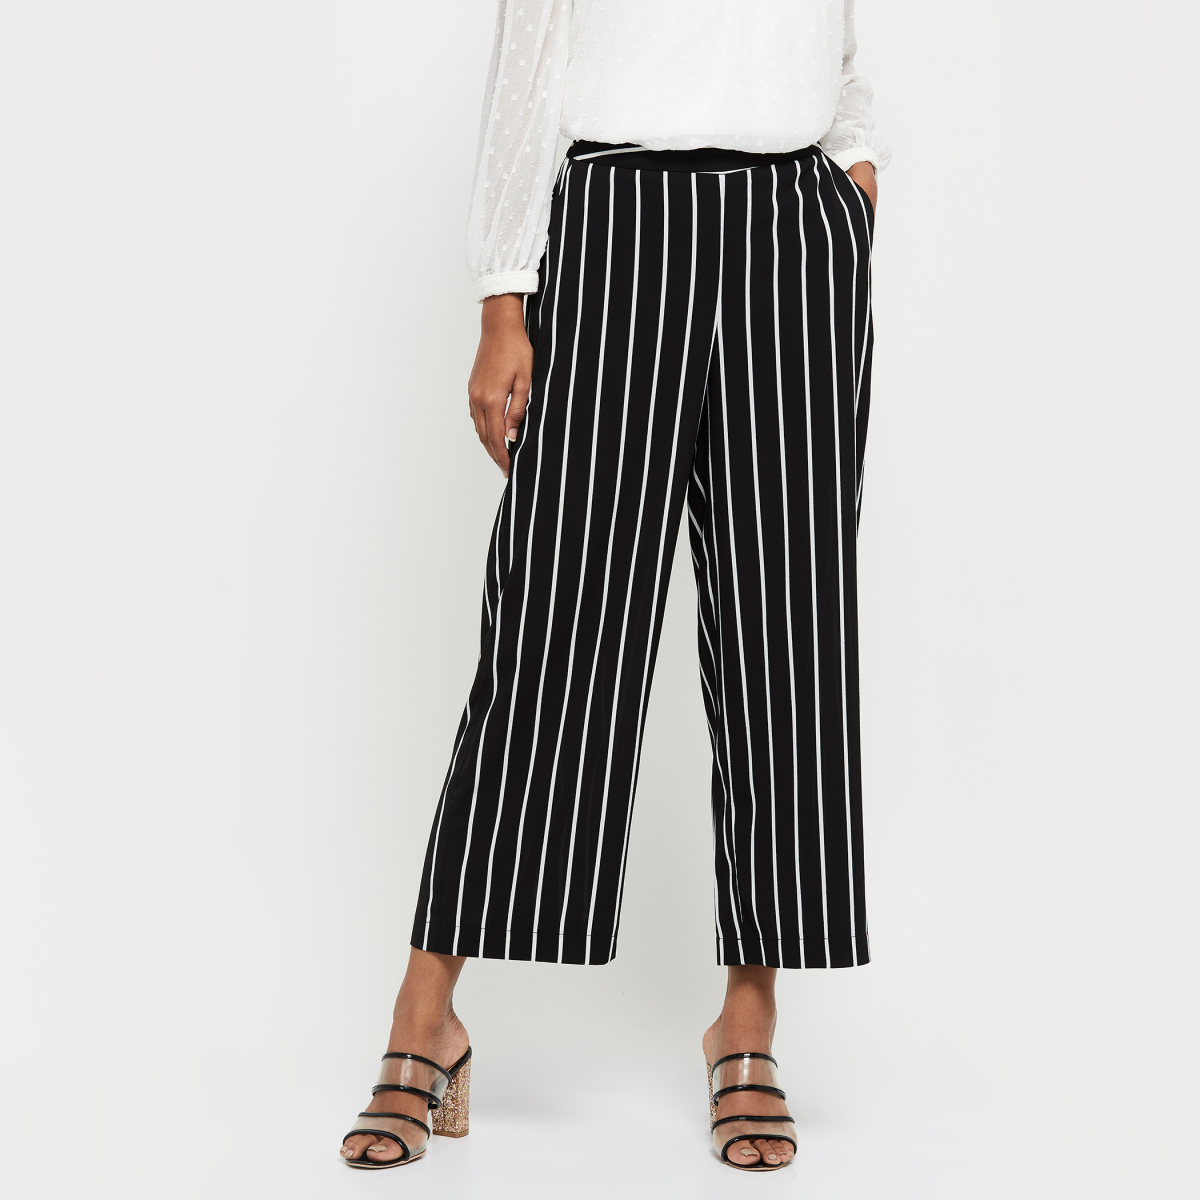 Buy Women Black Stripe Formal Slim Fit Trousers Online  740037  Van Heusen